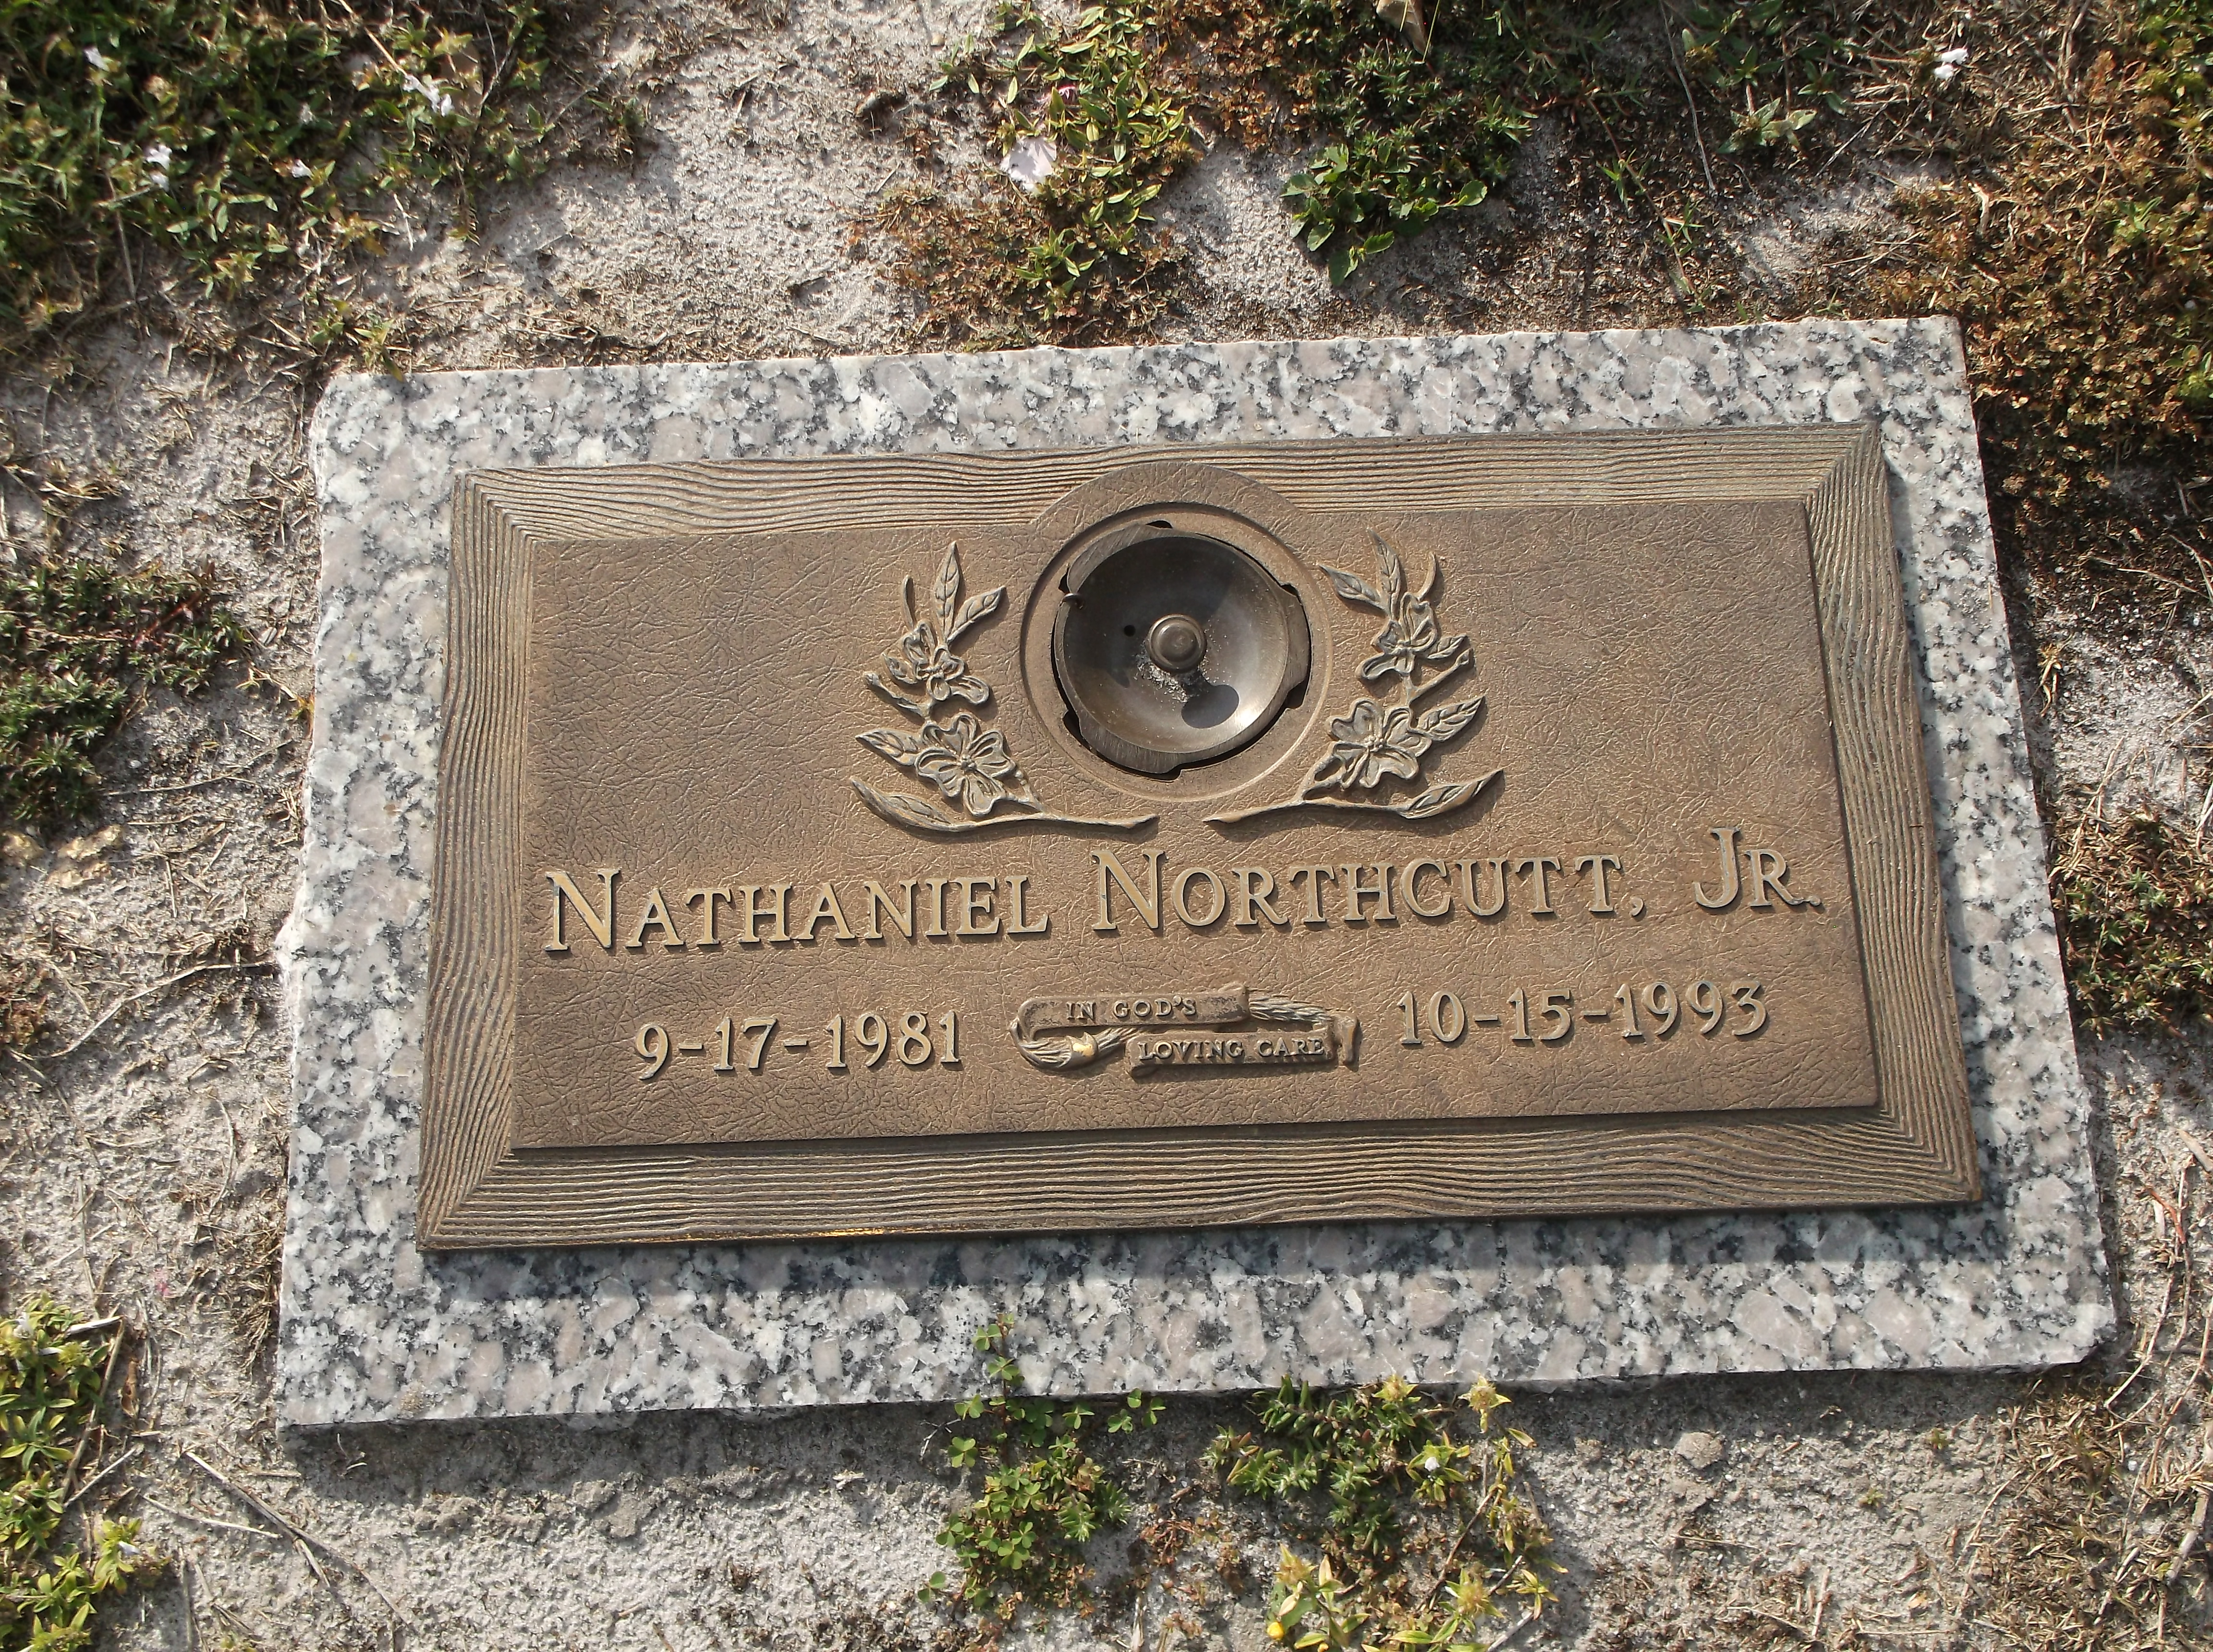 Nathaniel Northcutt, Jr